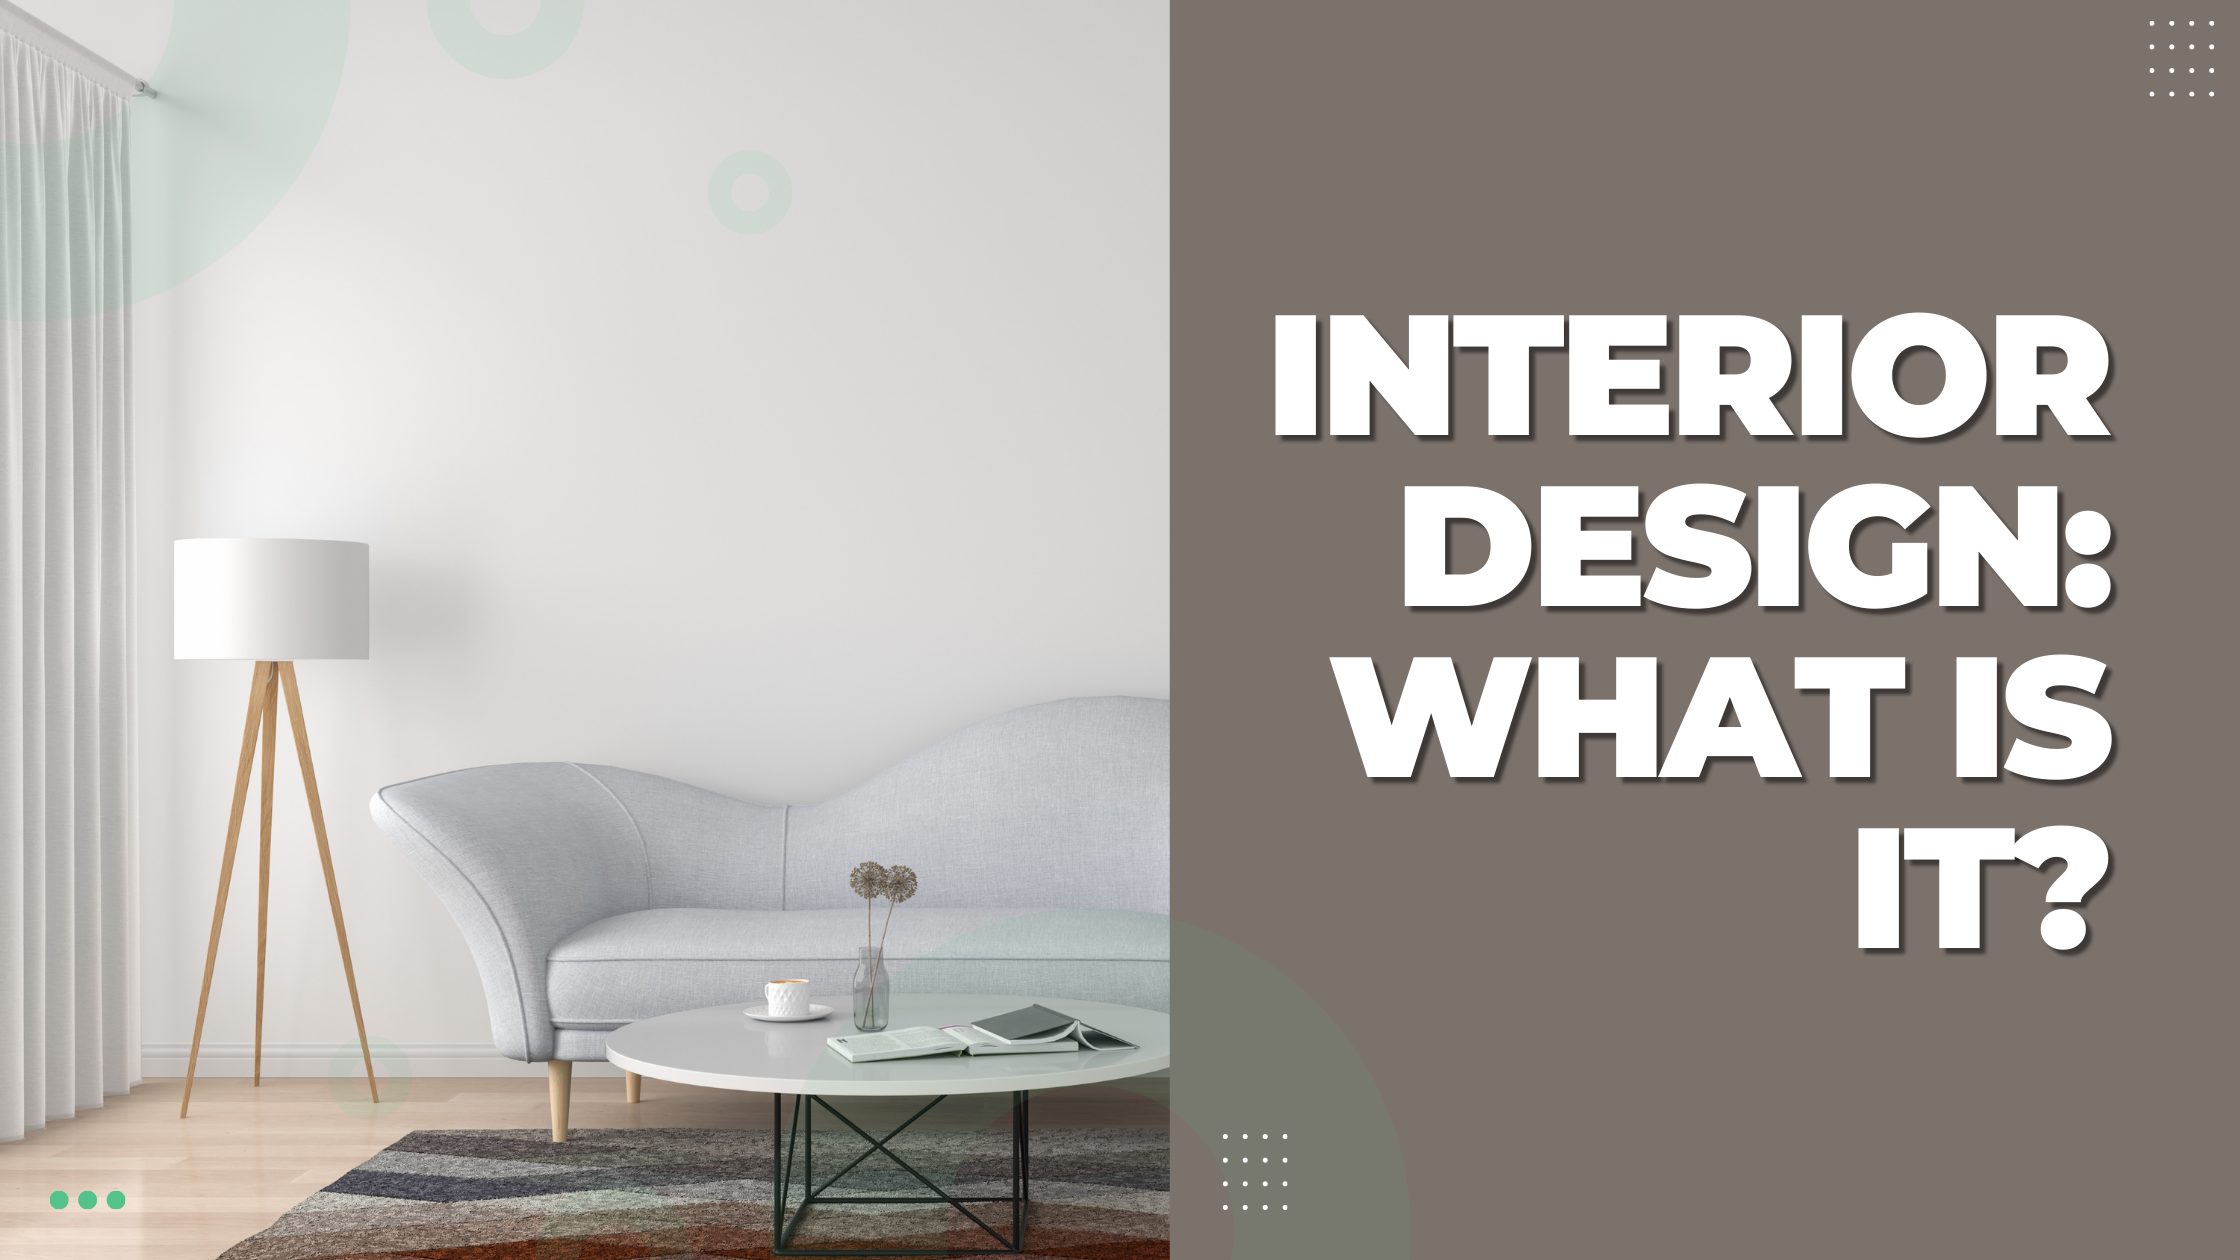 Interior design: What is it?